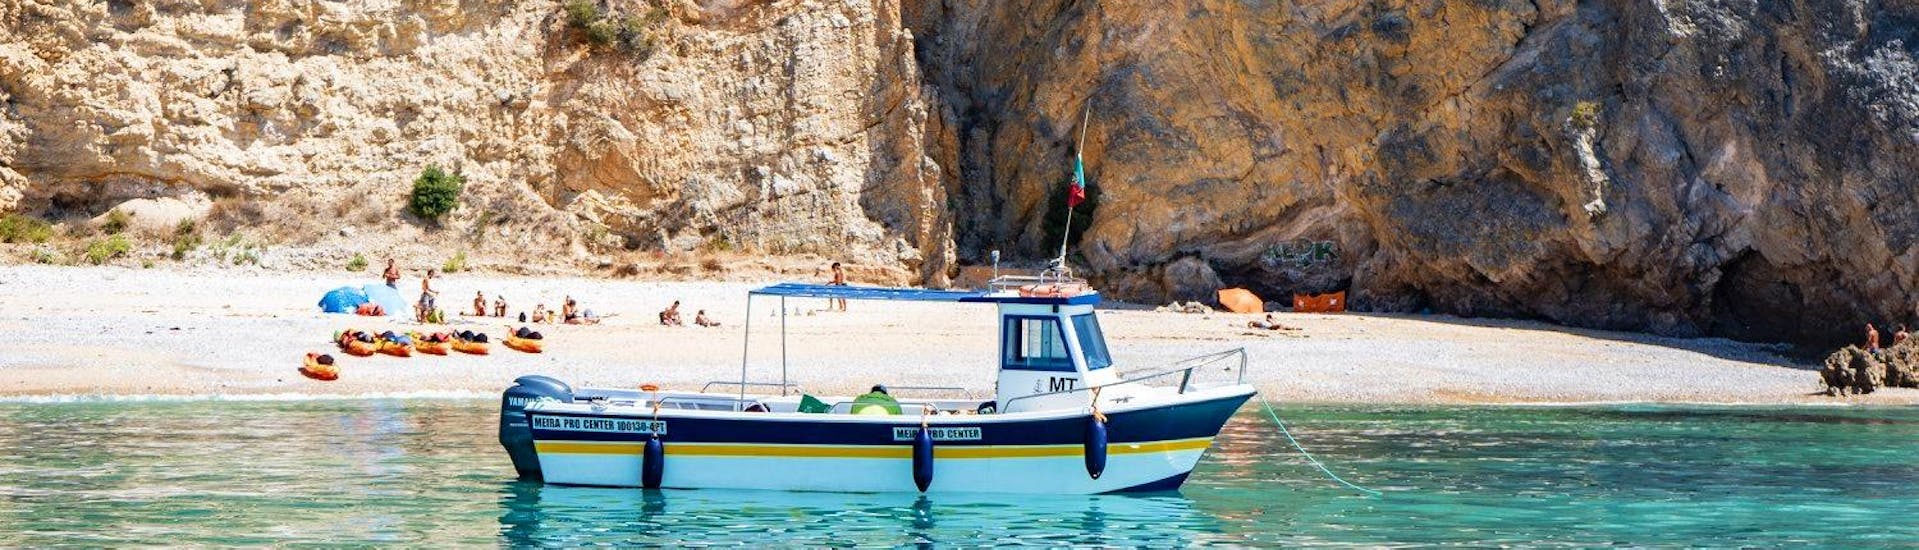 Während der Bootstour zu den wilden Stränden des Arrábida Naturparks mit Meira Pro Center Sesimbra liegt das Boot vor einem Strand , wo die Teilnehmer sich entspannen und das klare Wasser genießen können.